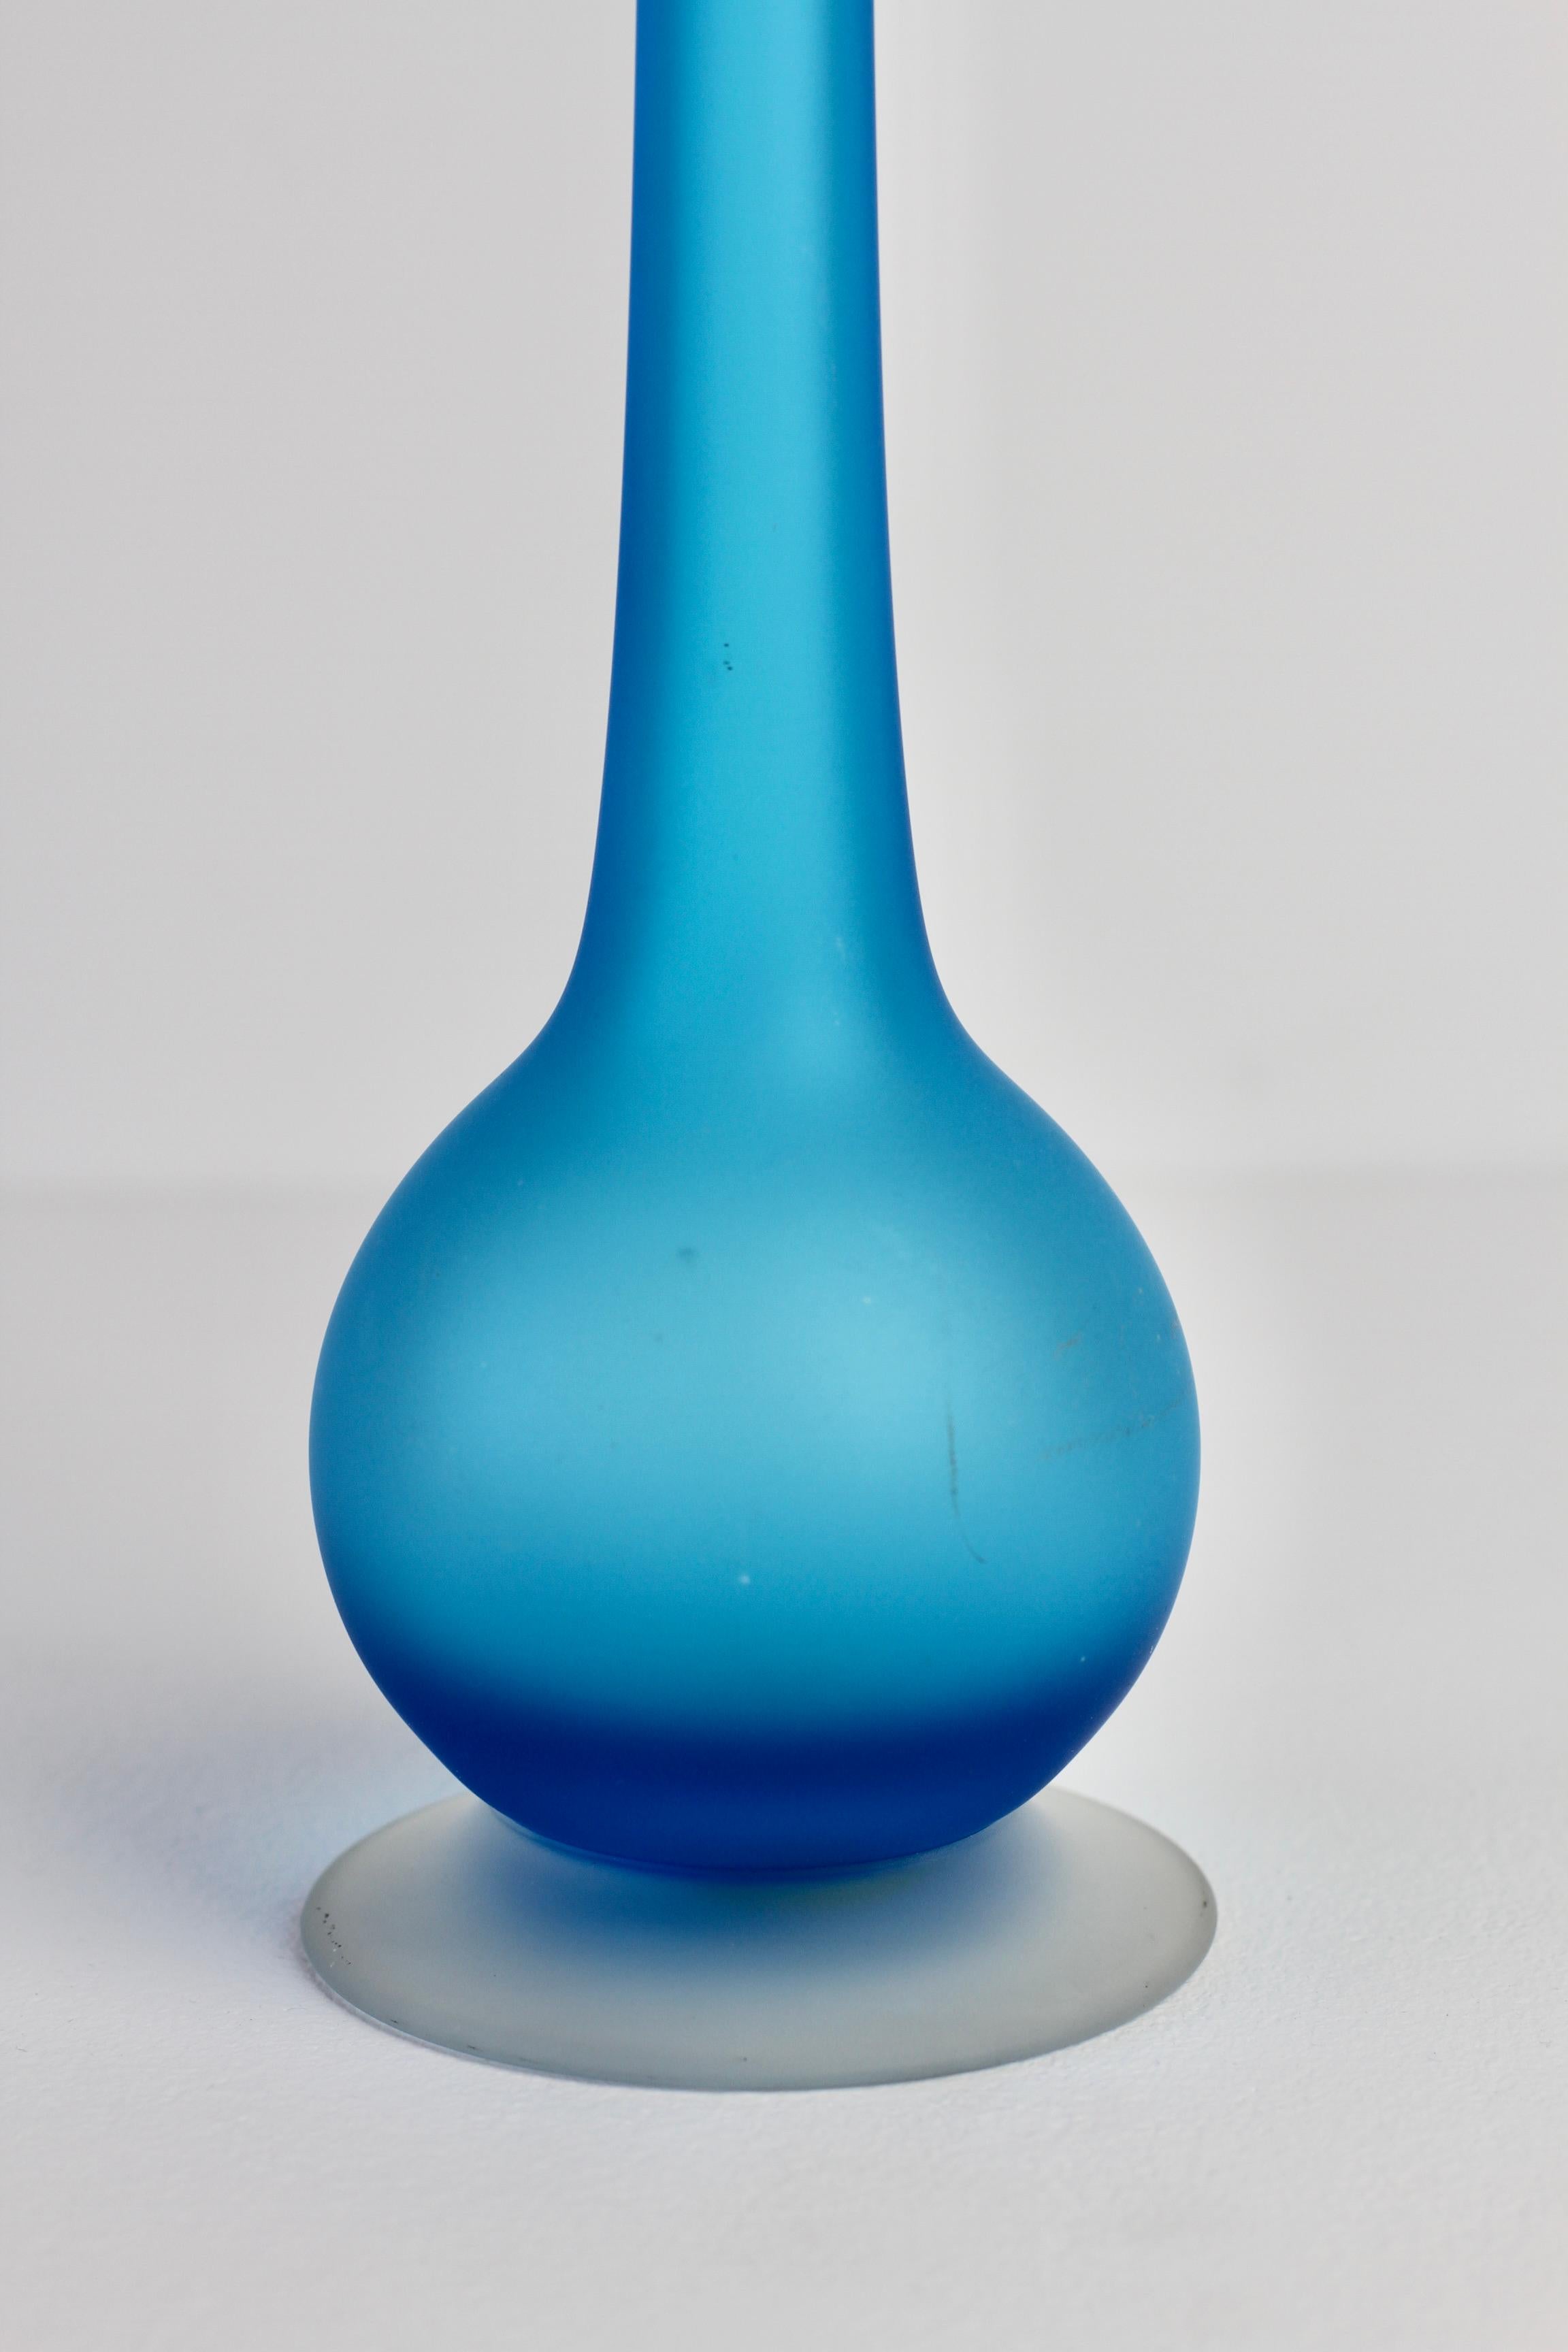 Rare Colorful Blue Carlo Moretti Satinato Murano Glass Pencil Vase For Sale 4